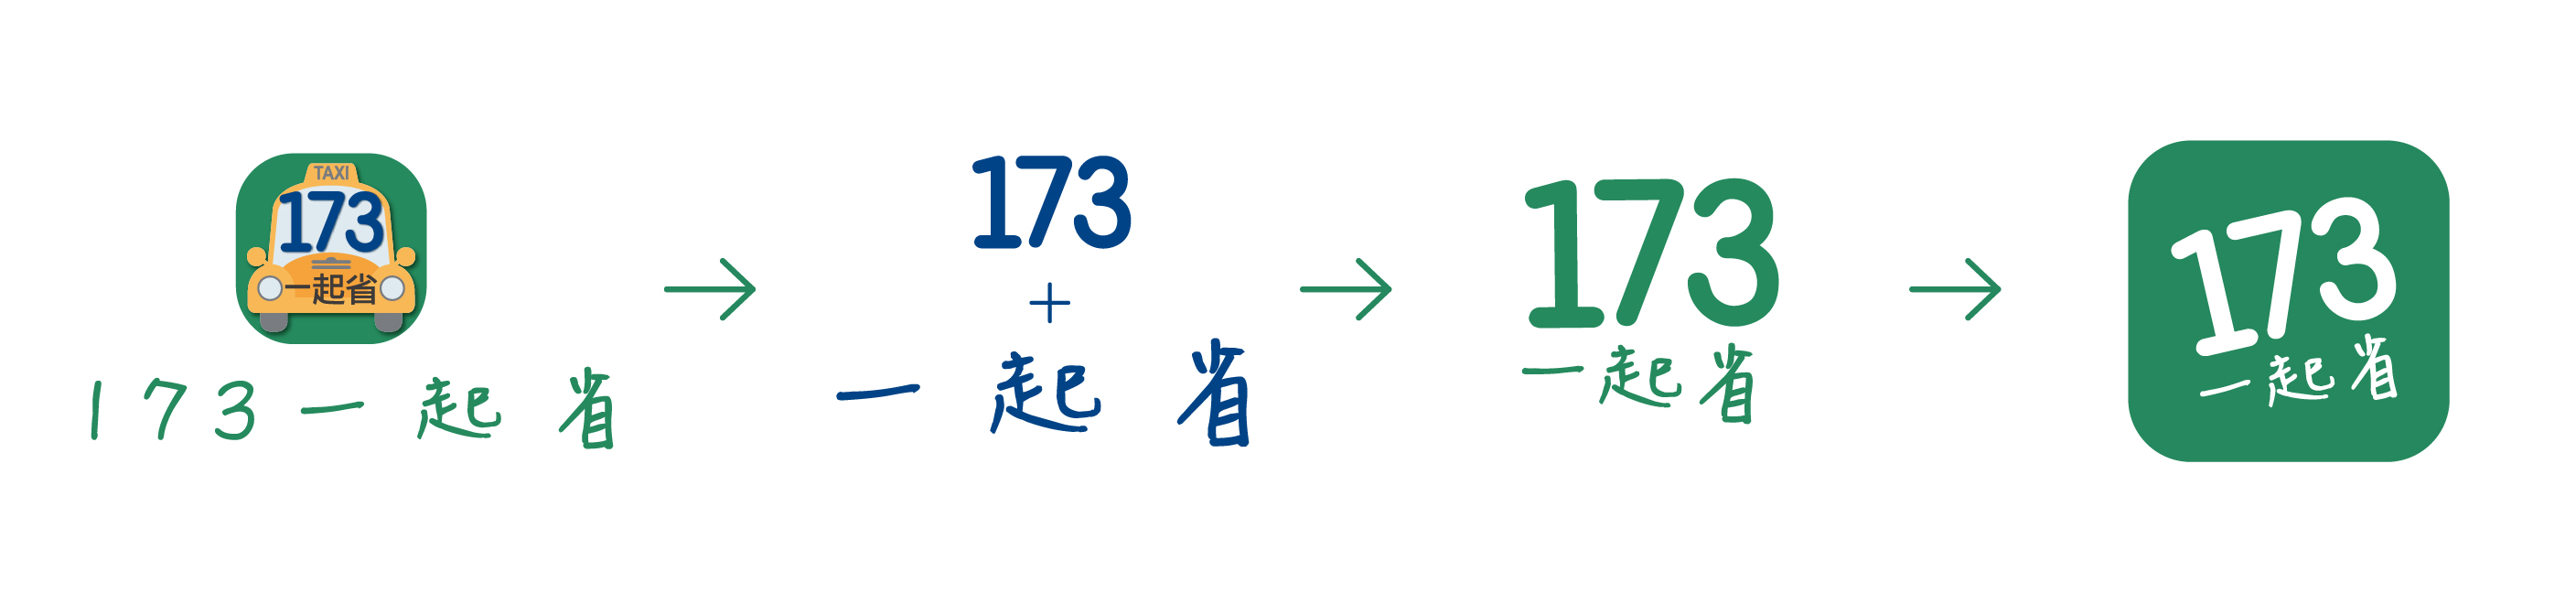 173一起省 全新品牌logo改版 讓乘客輕鬆享受173一起省